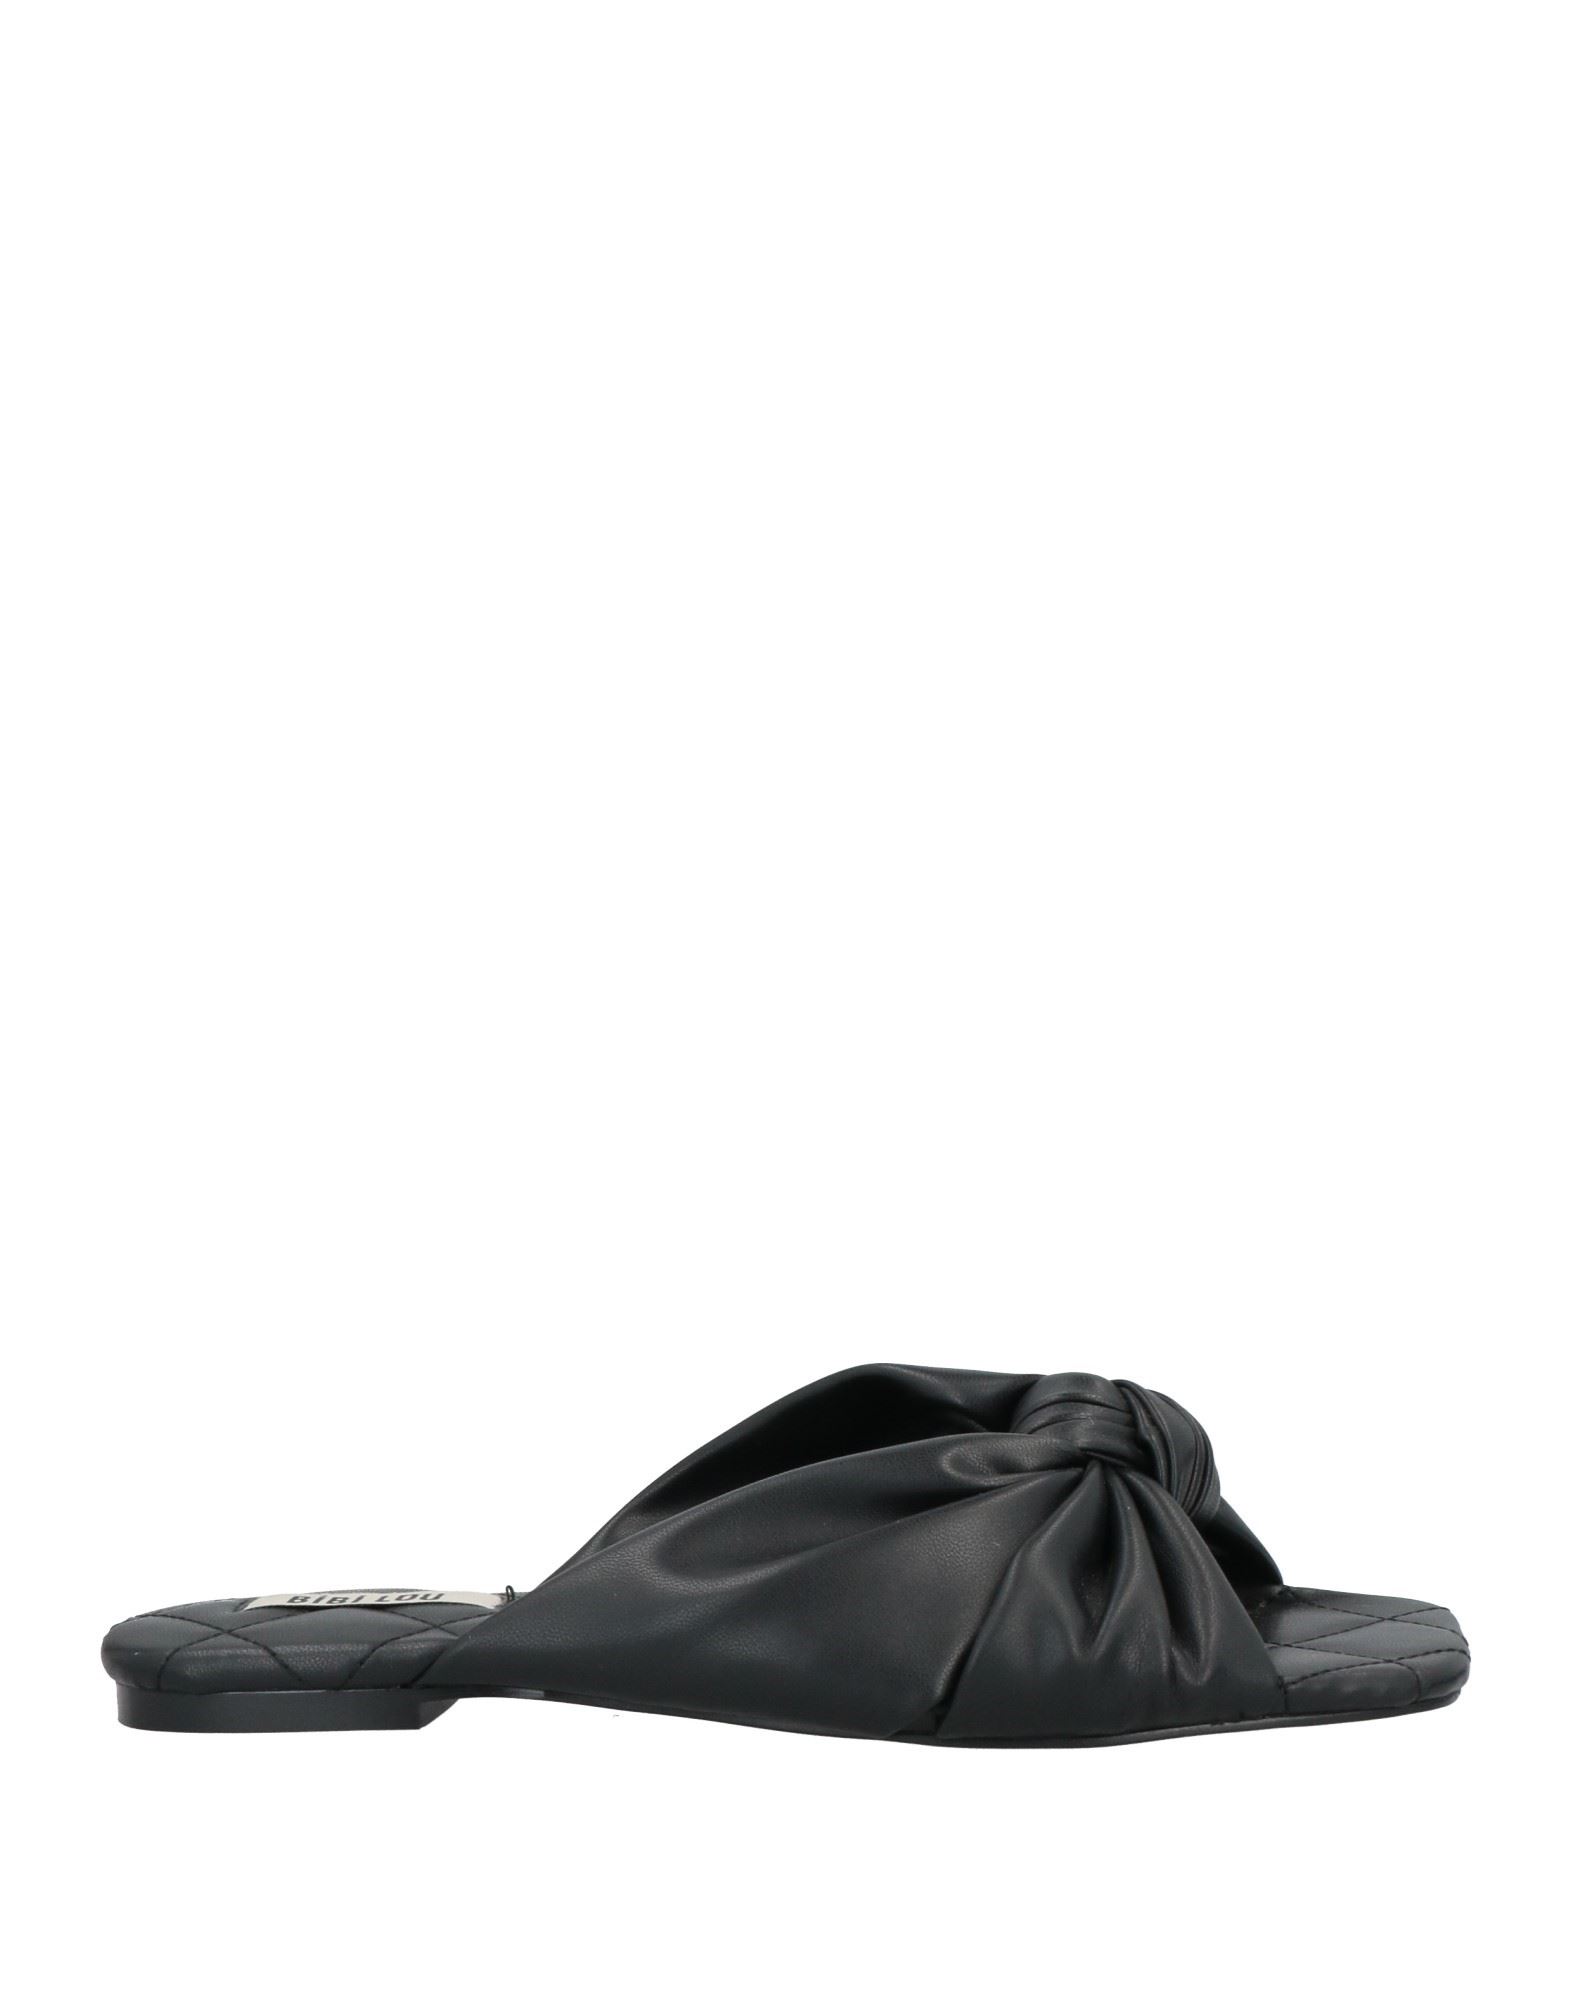 Bibi Lou Sandals In Black